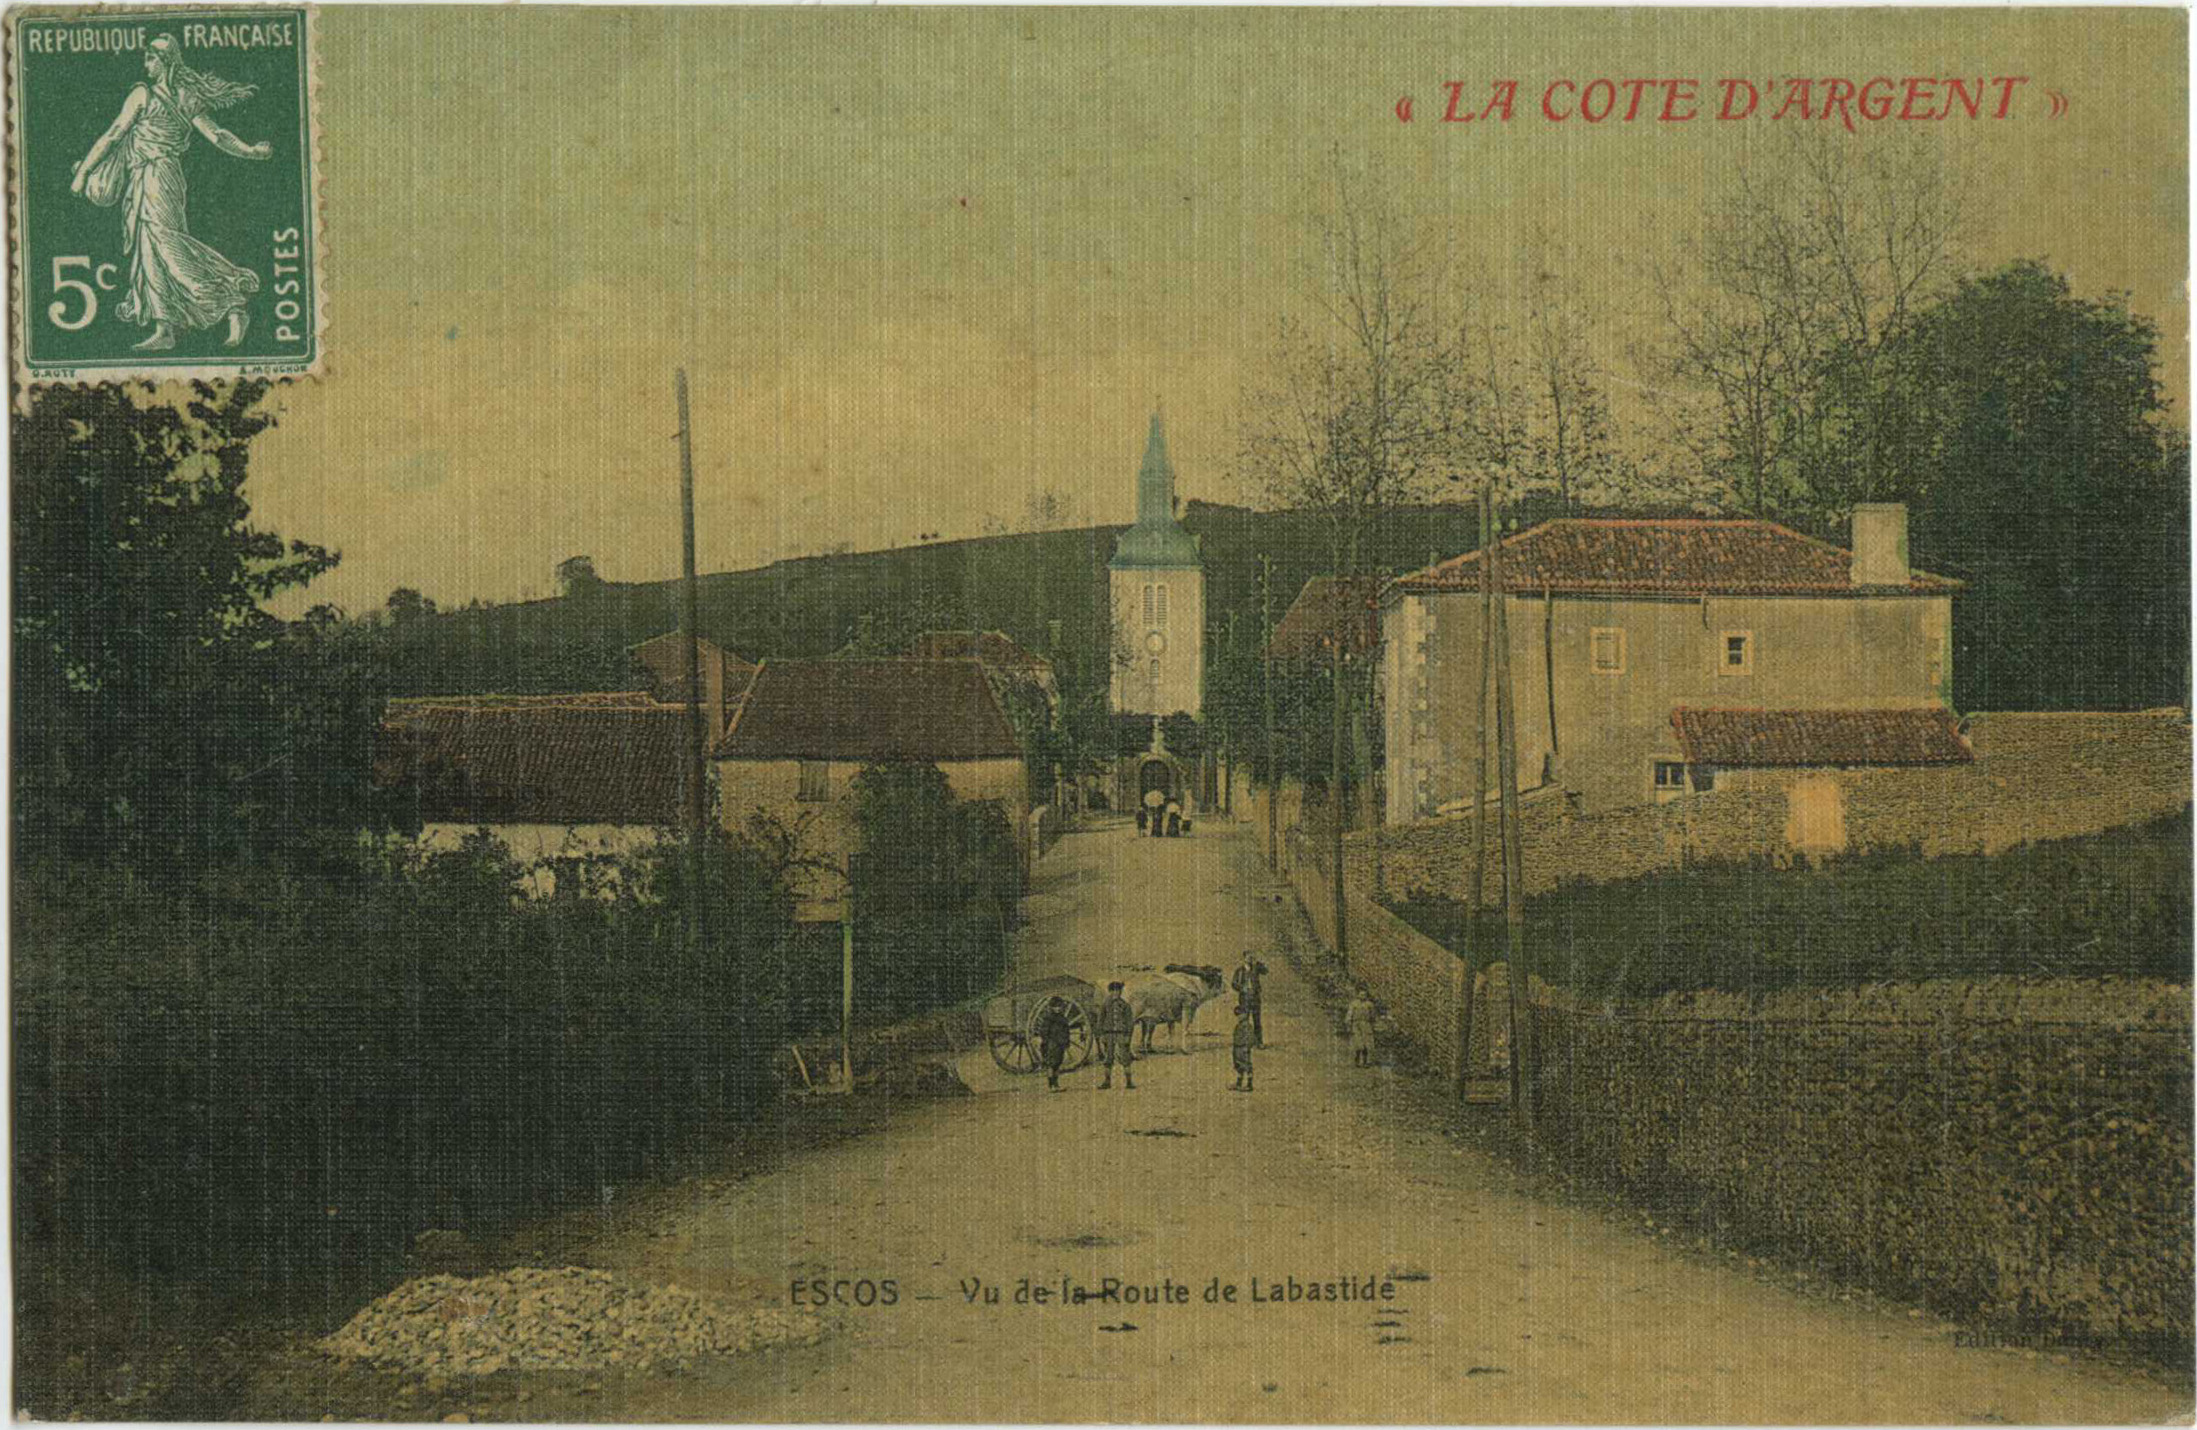 Escos - Vu de la Route de Labastide